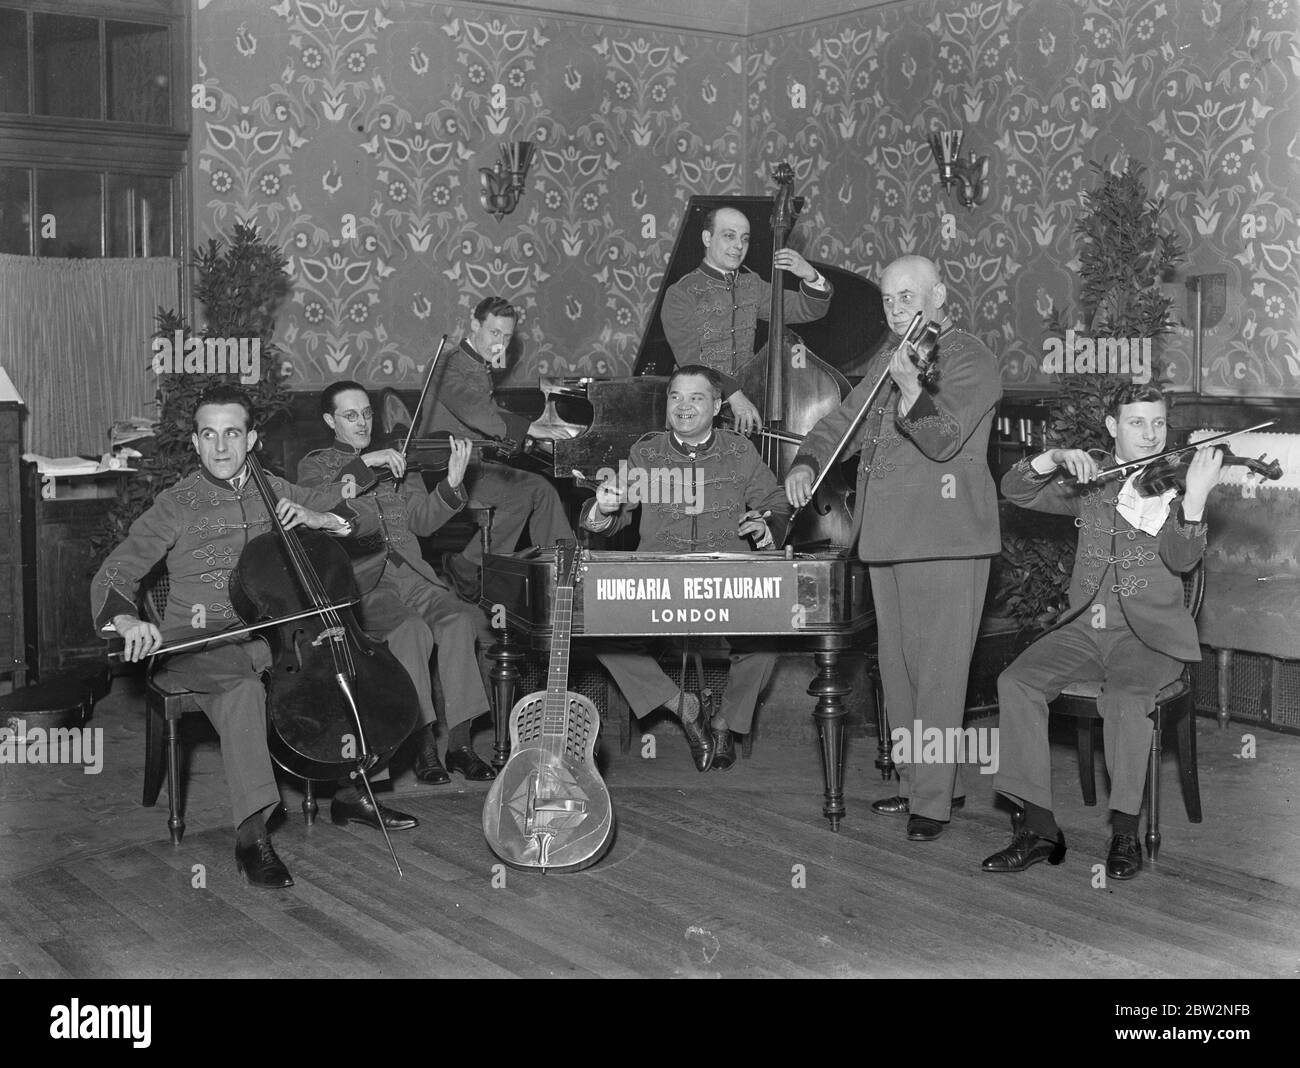 Un groupe en direct dans un restaurant hongrois à Londres. 29 février 1932 30, 30, 30, 30, 30, 30, 30, 30, 30 Banque D'Images